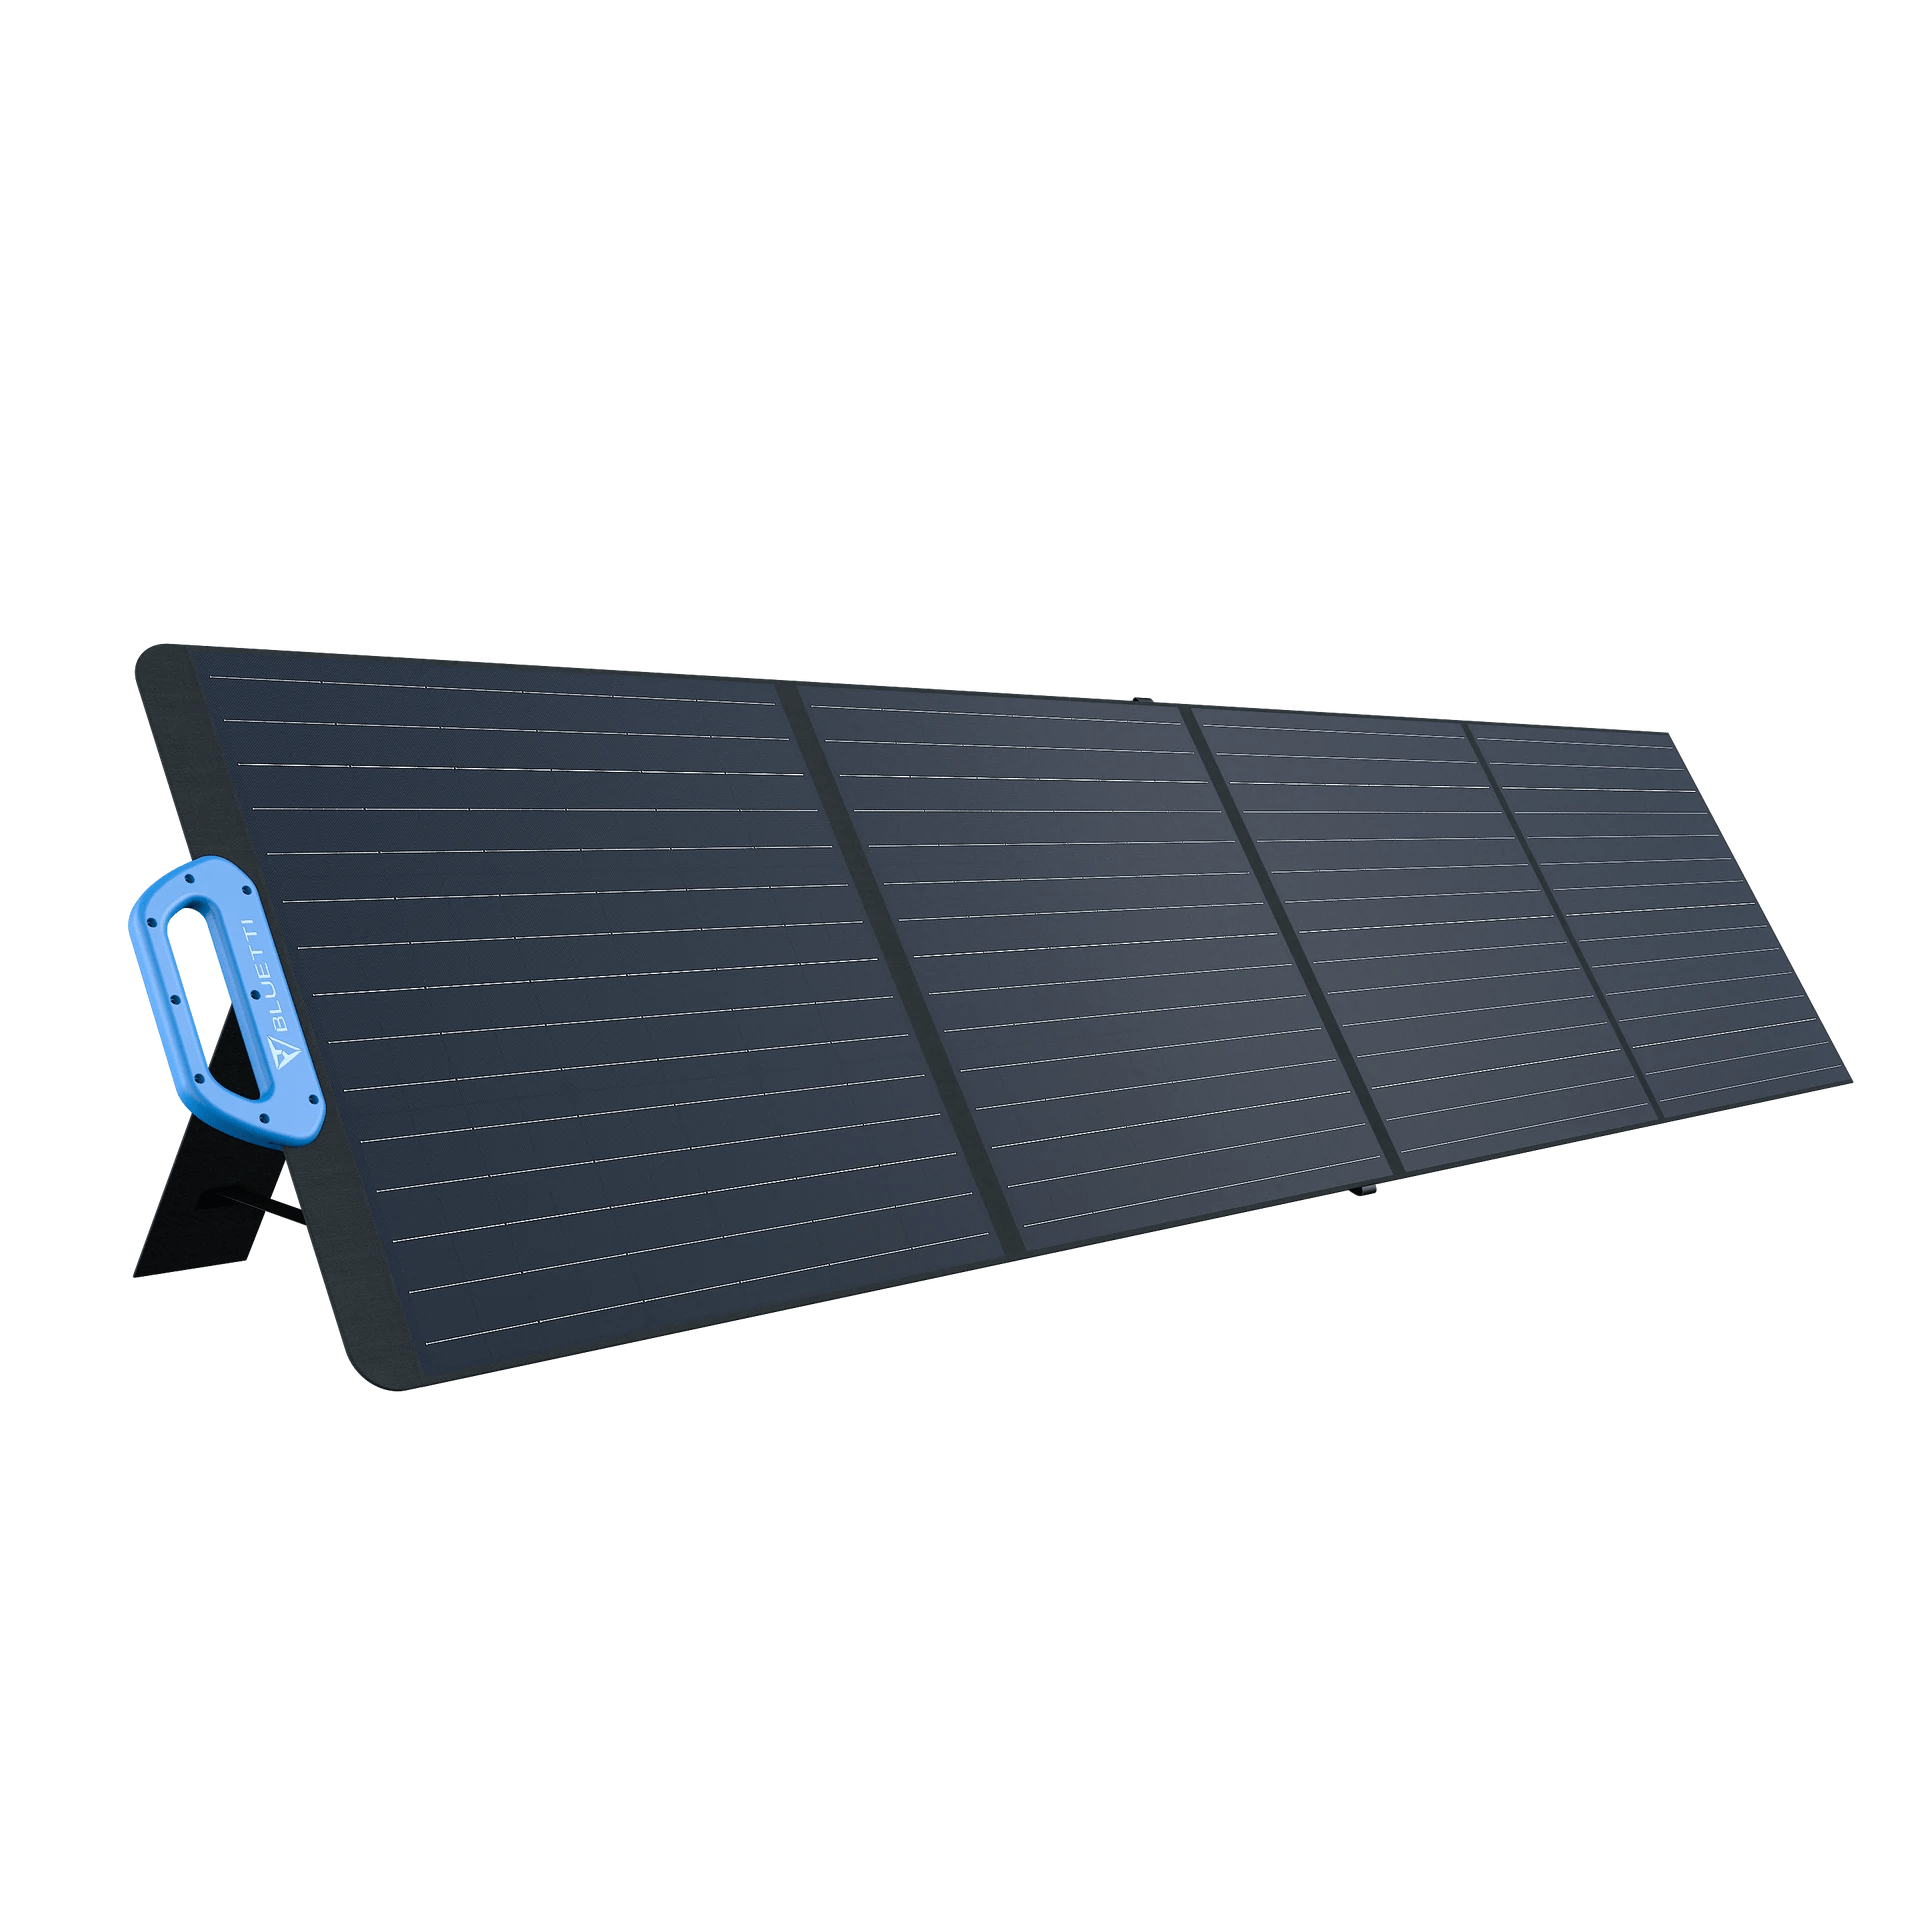 Bluetti PV200 200W Portable Solar Panel